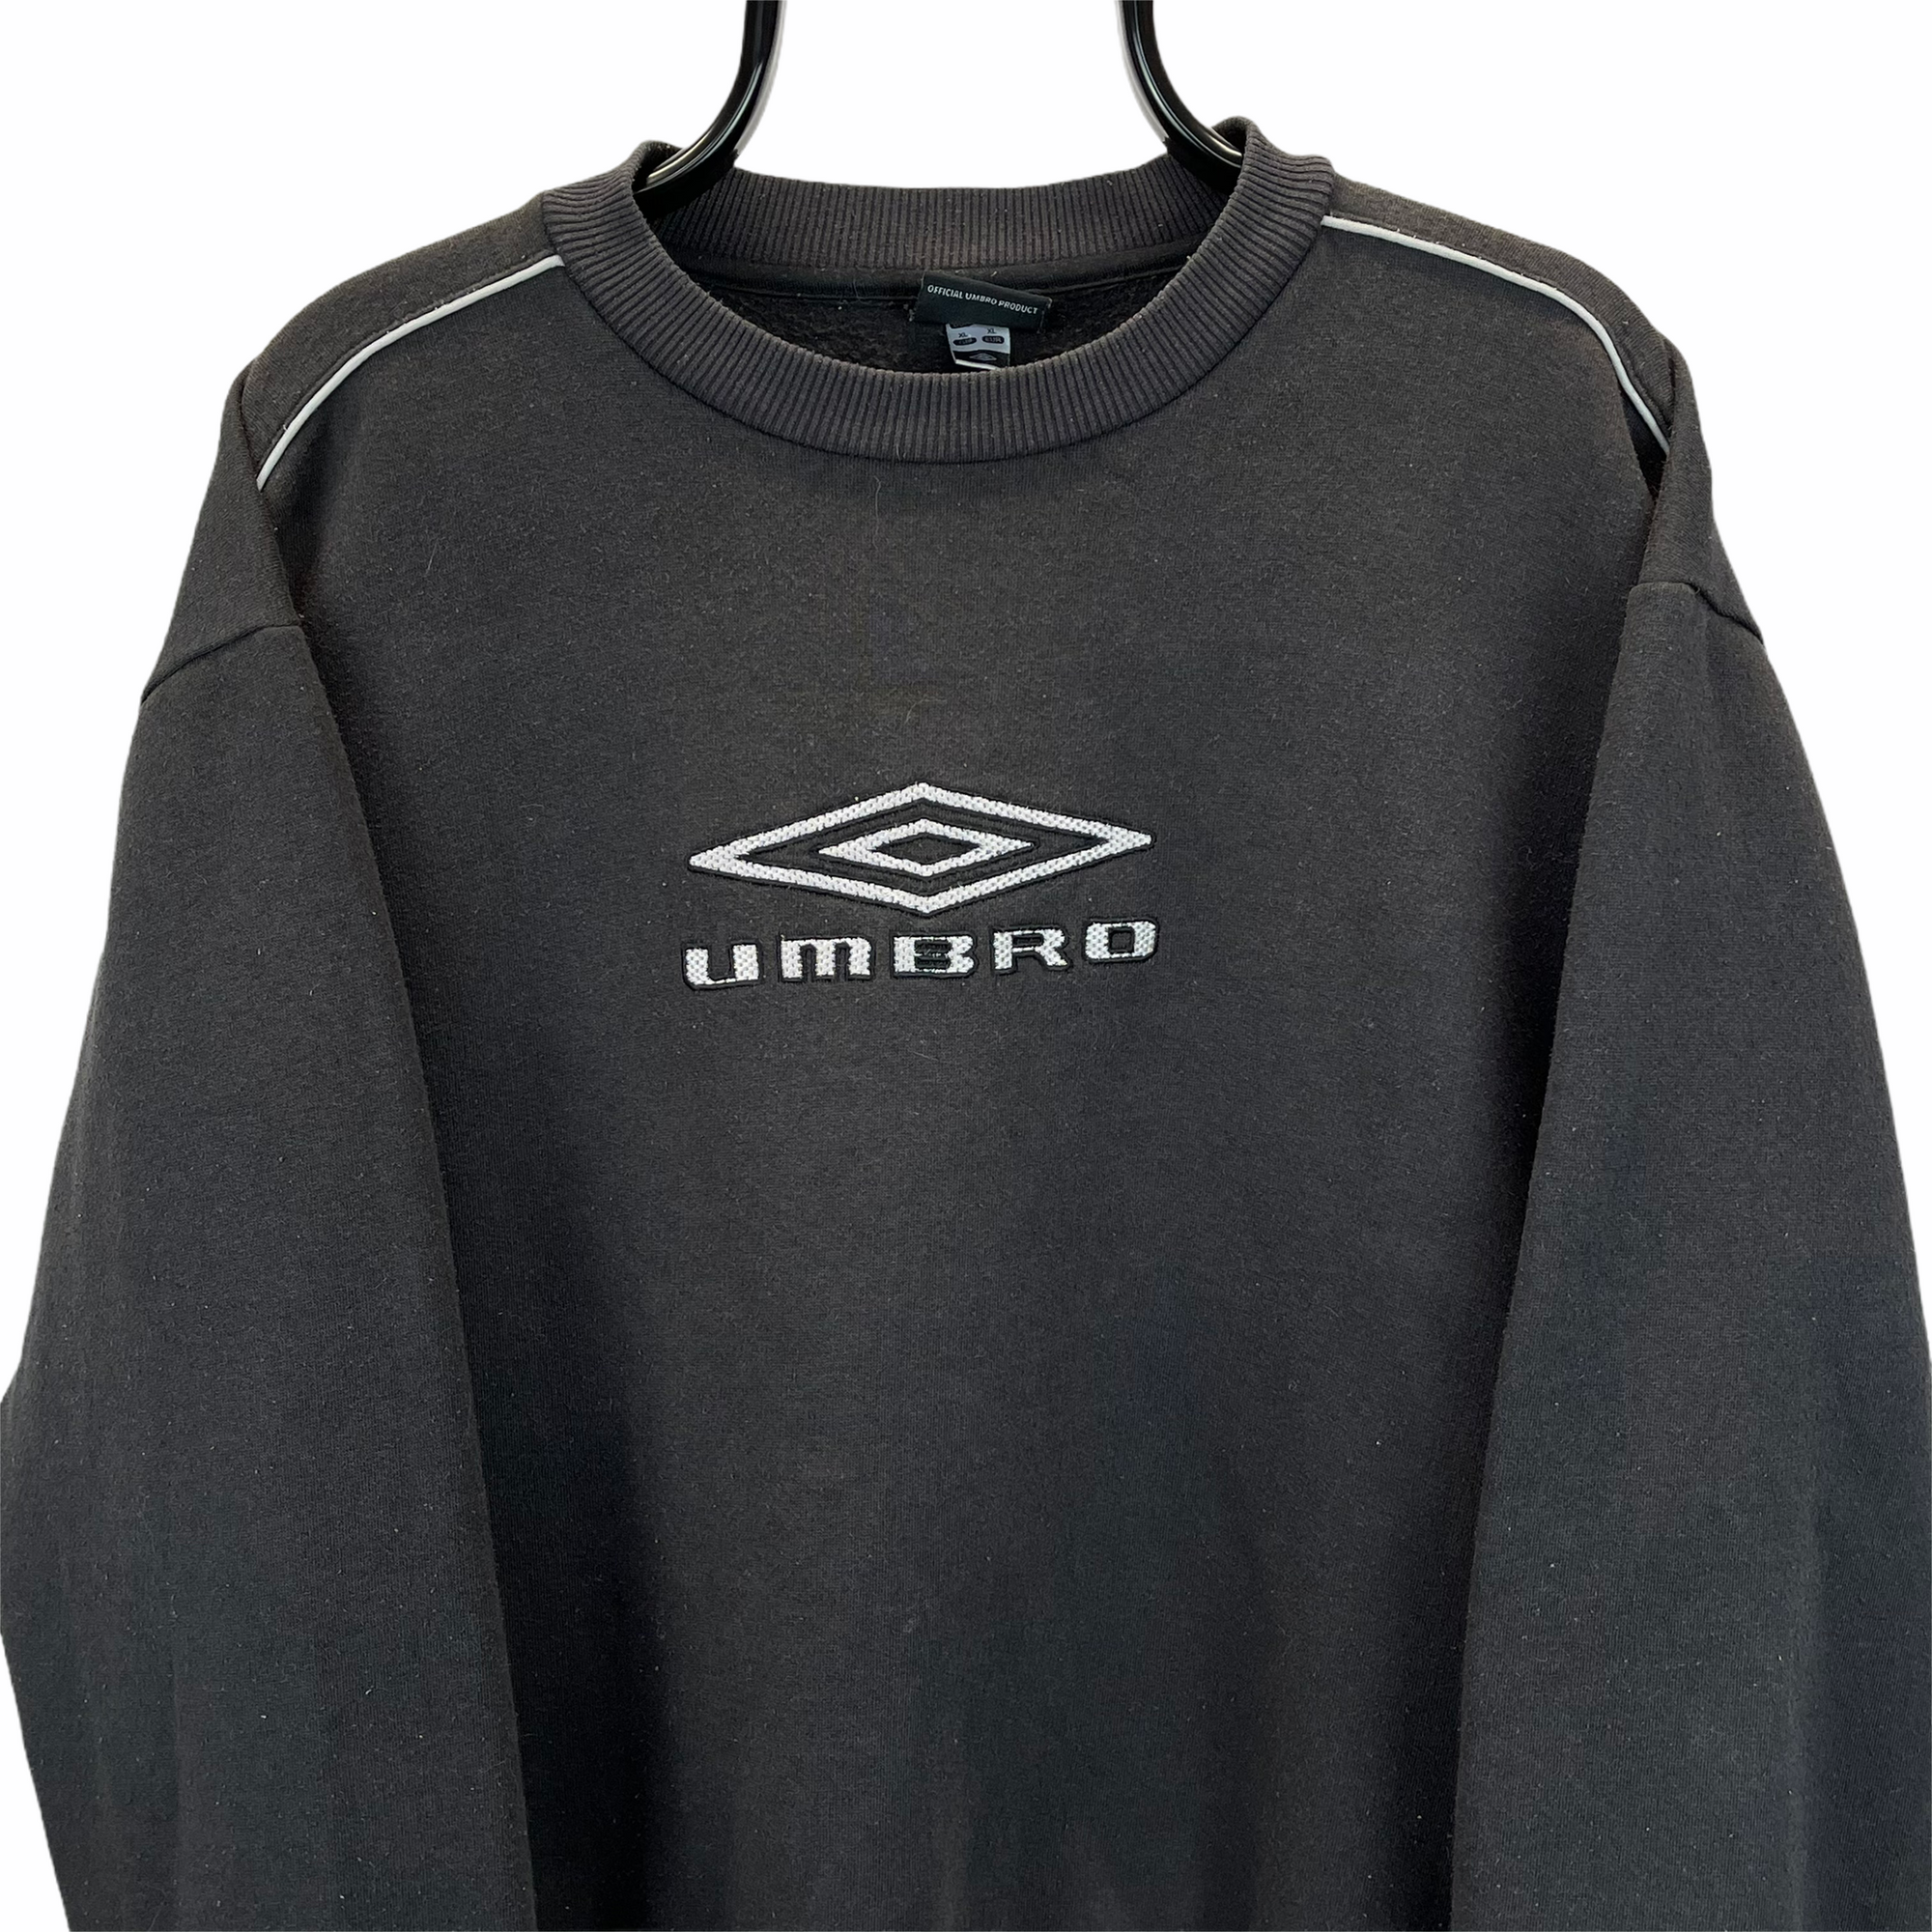 Vintage 90s Umbro Spellout Sweatshirt in Black - Men's Large/Women's XL